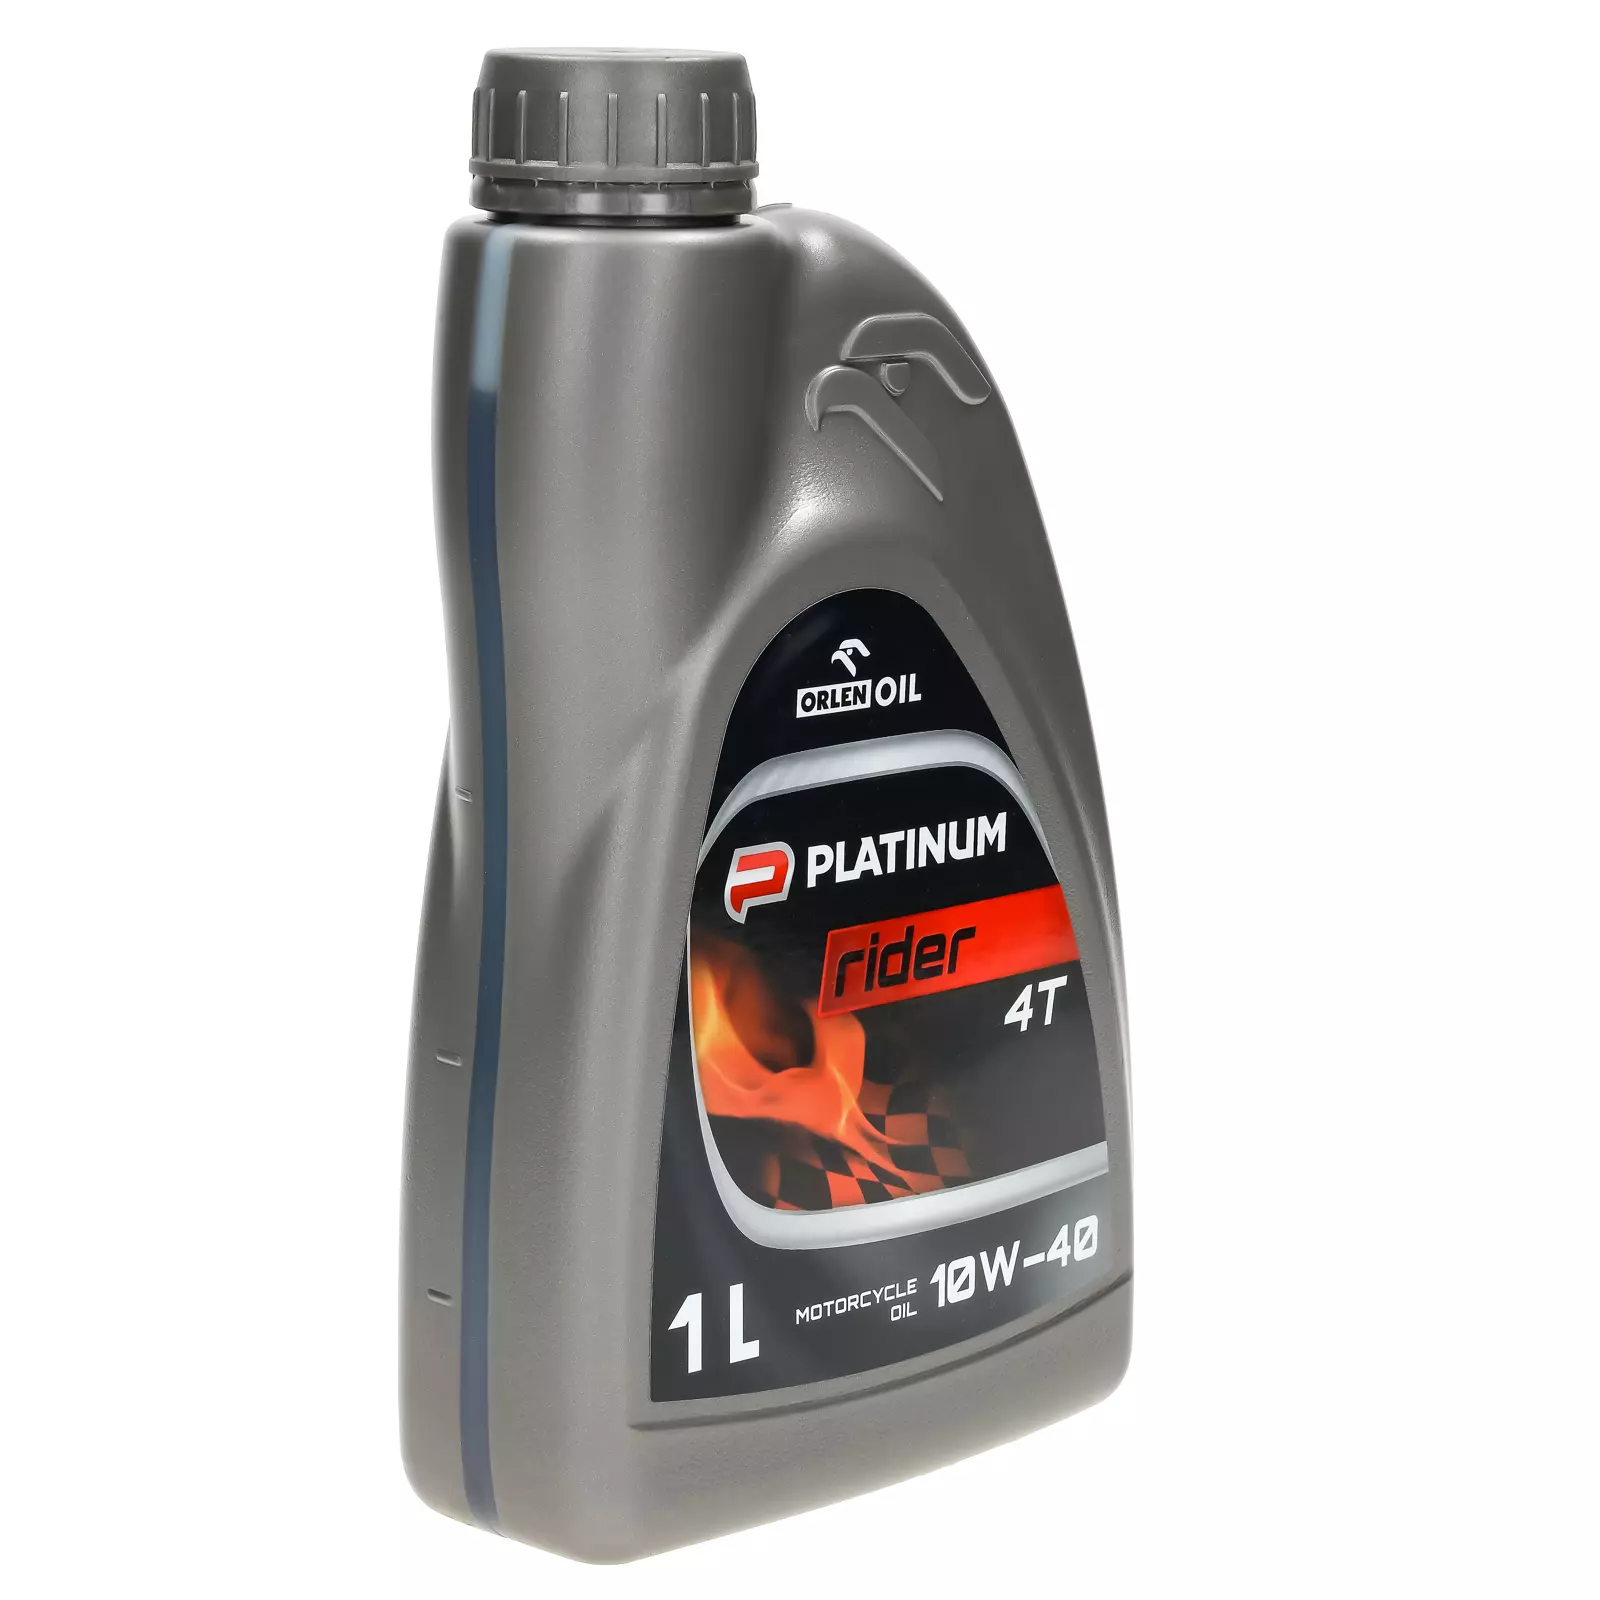 Orlen Oil Platinum Rider 4T 10W-40 - моторное масло 1л